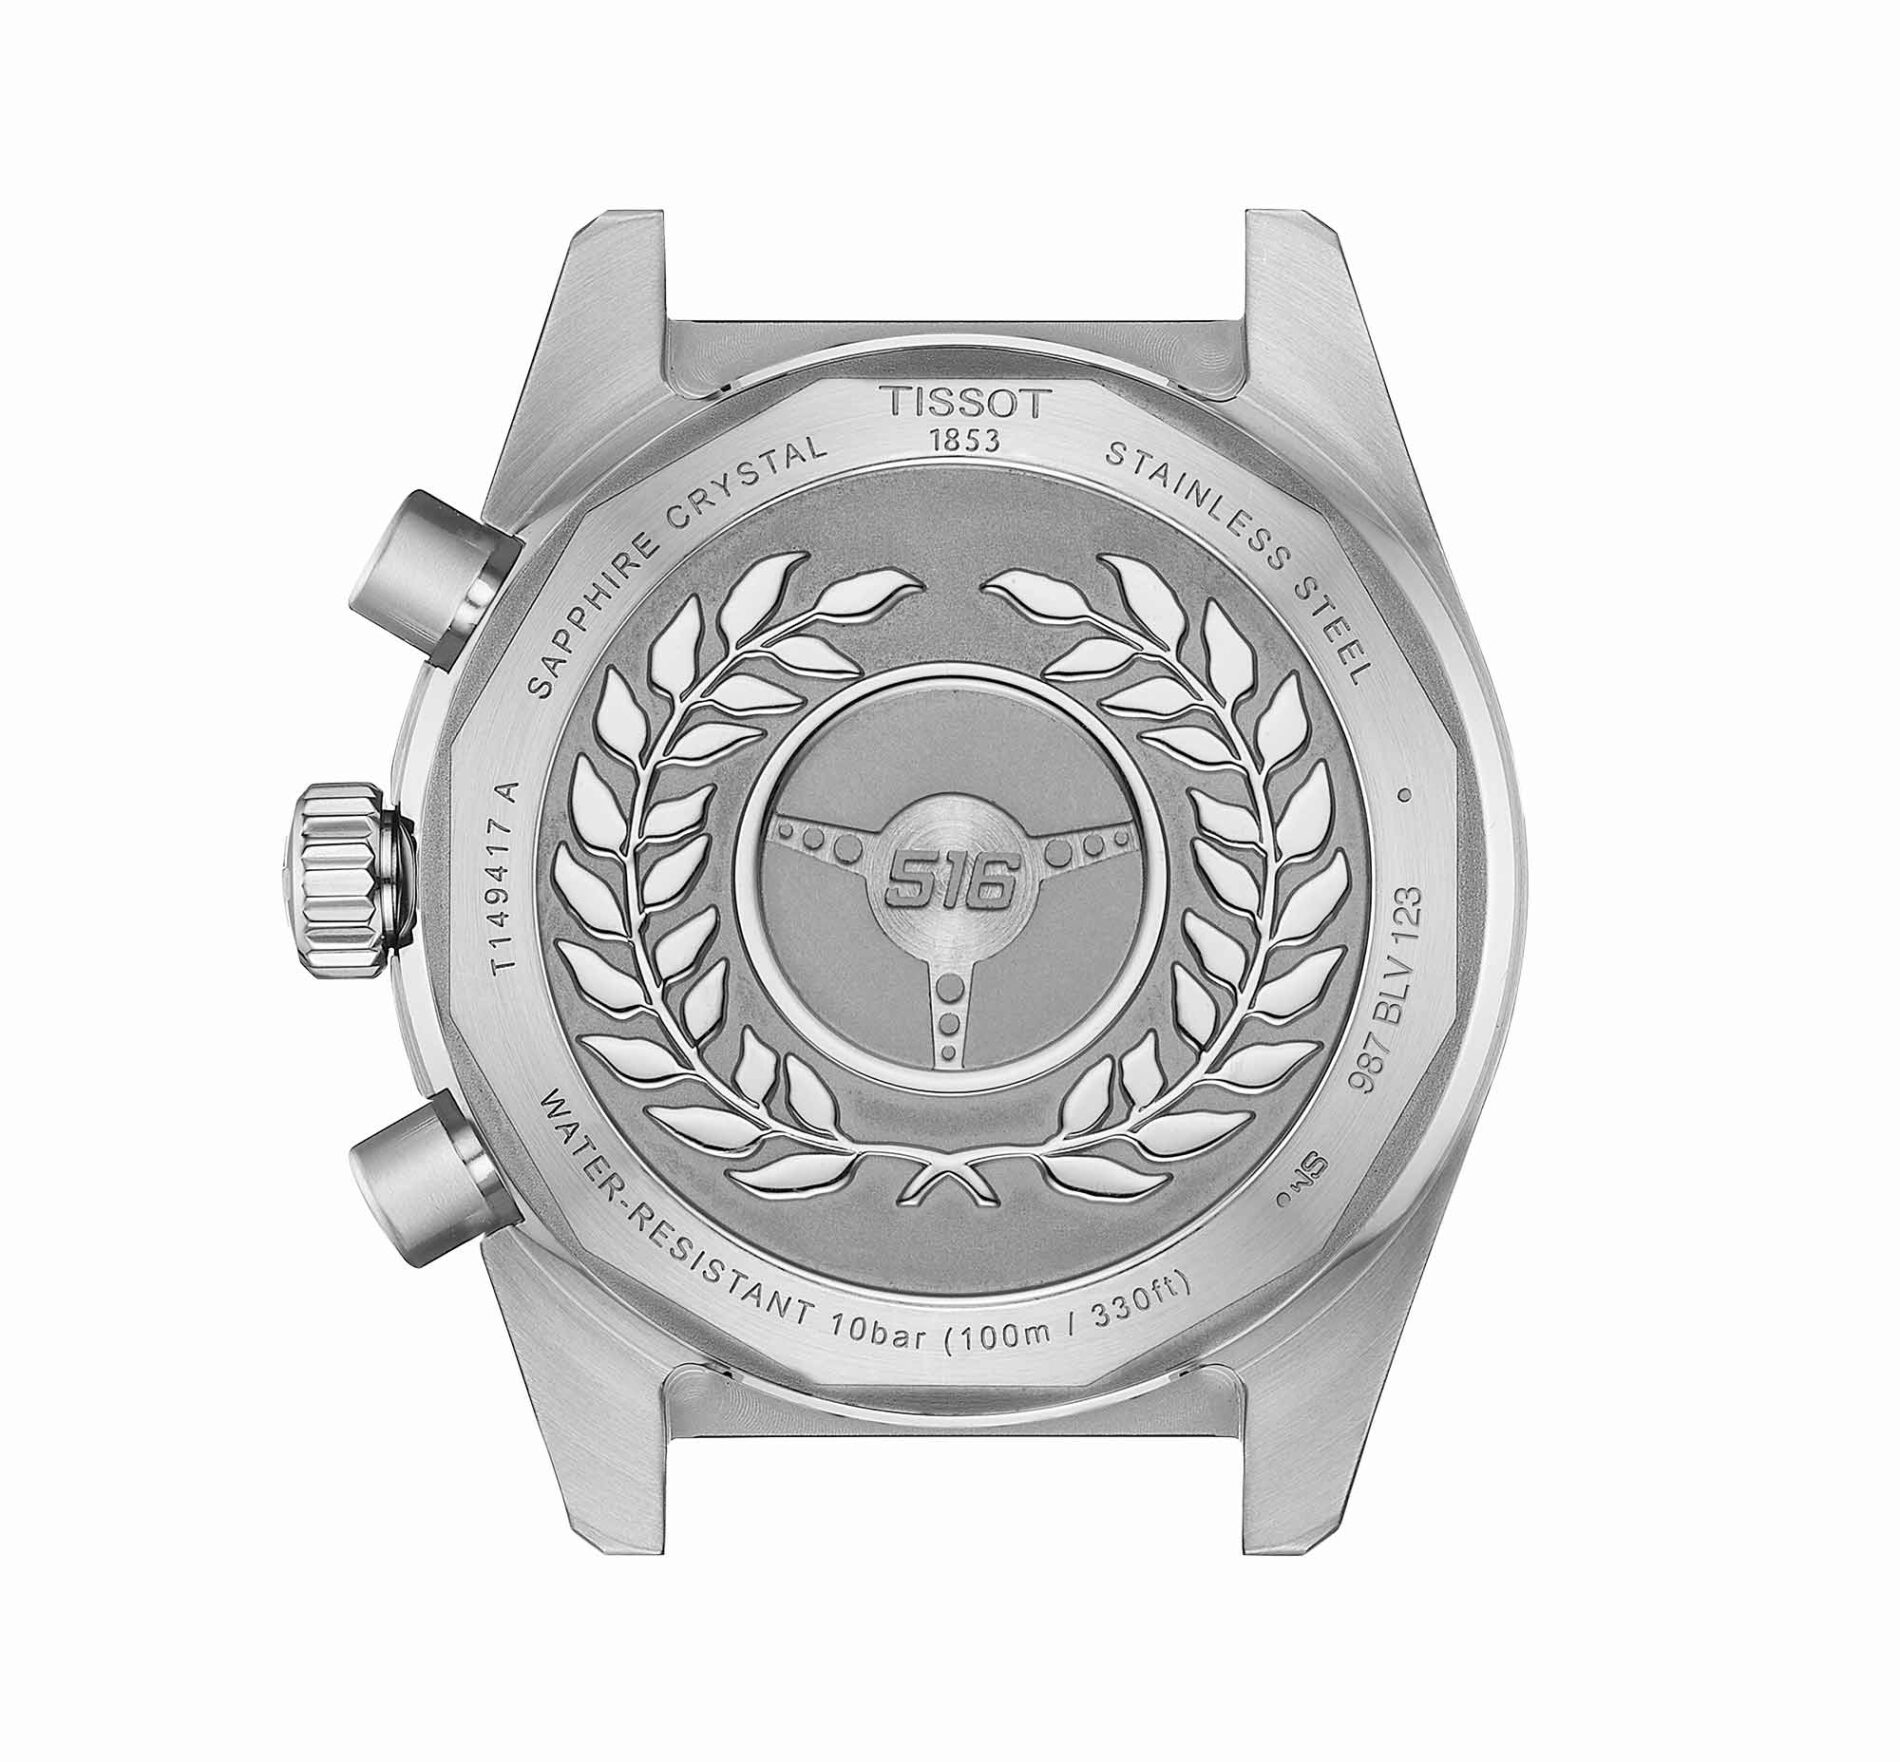 Tissot PR516 Chronograph T149.417.22.051.00 - Gioielleria Casavola di Noci - orologio svizzero al quarzo con cassa in acciaio INOX e fondello con incisioni